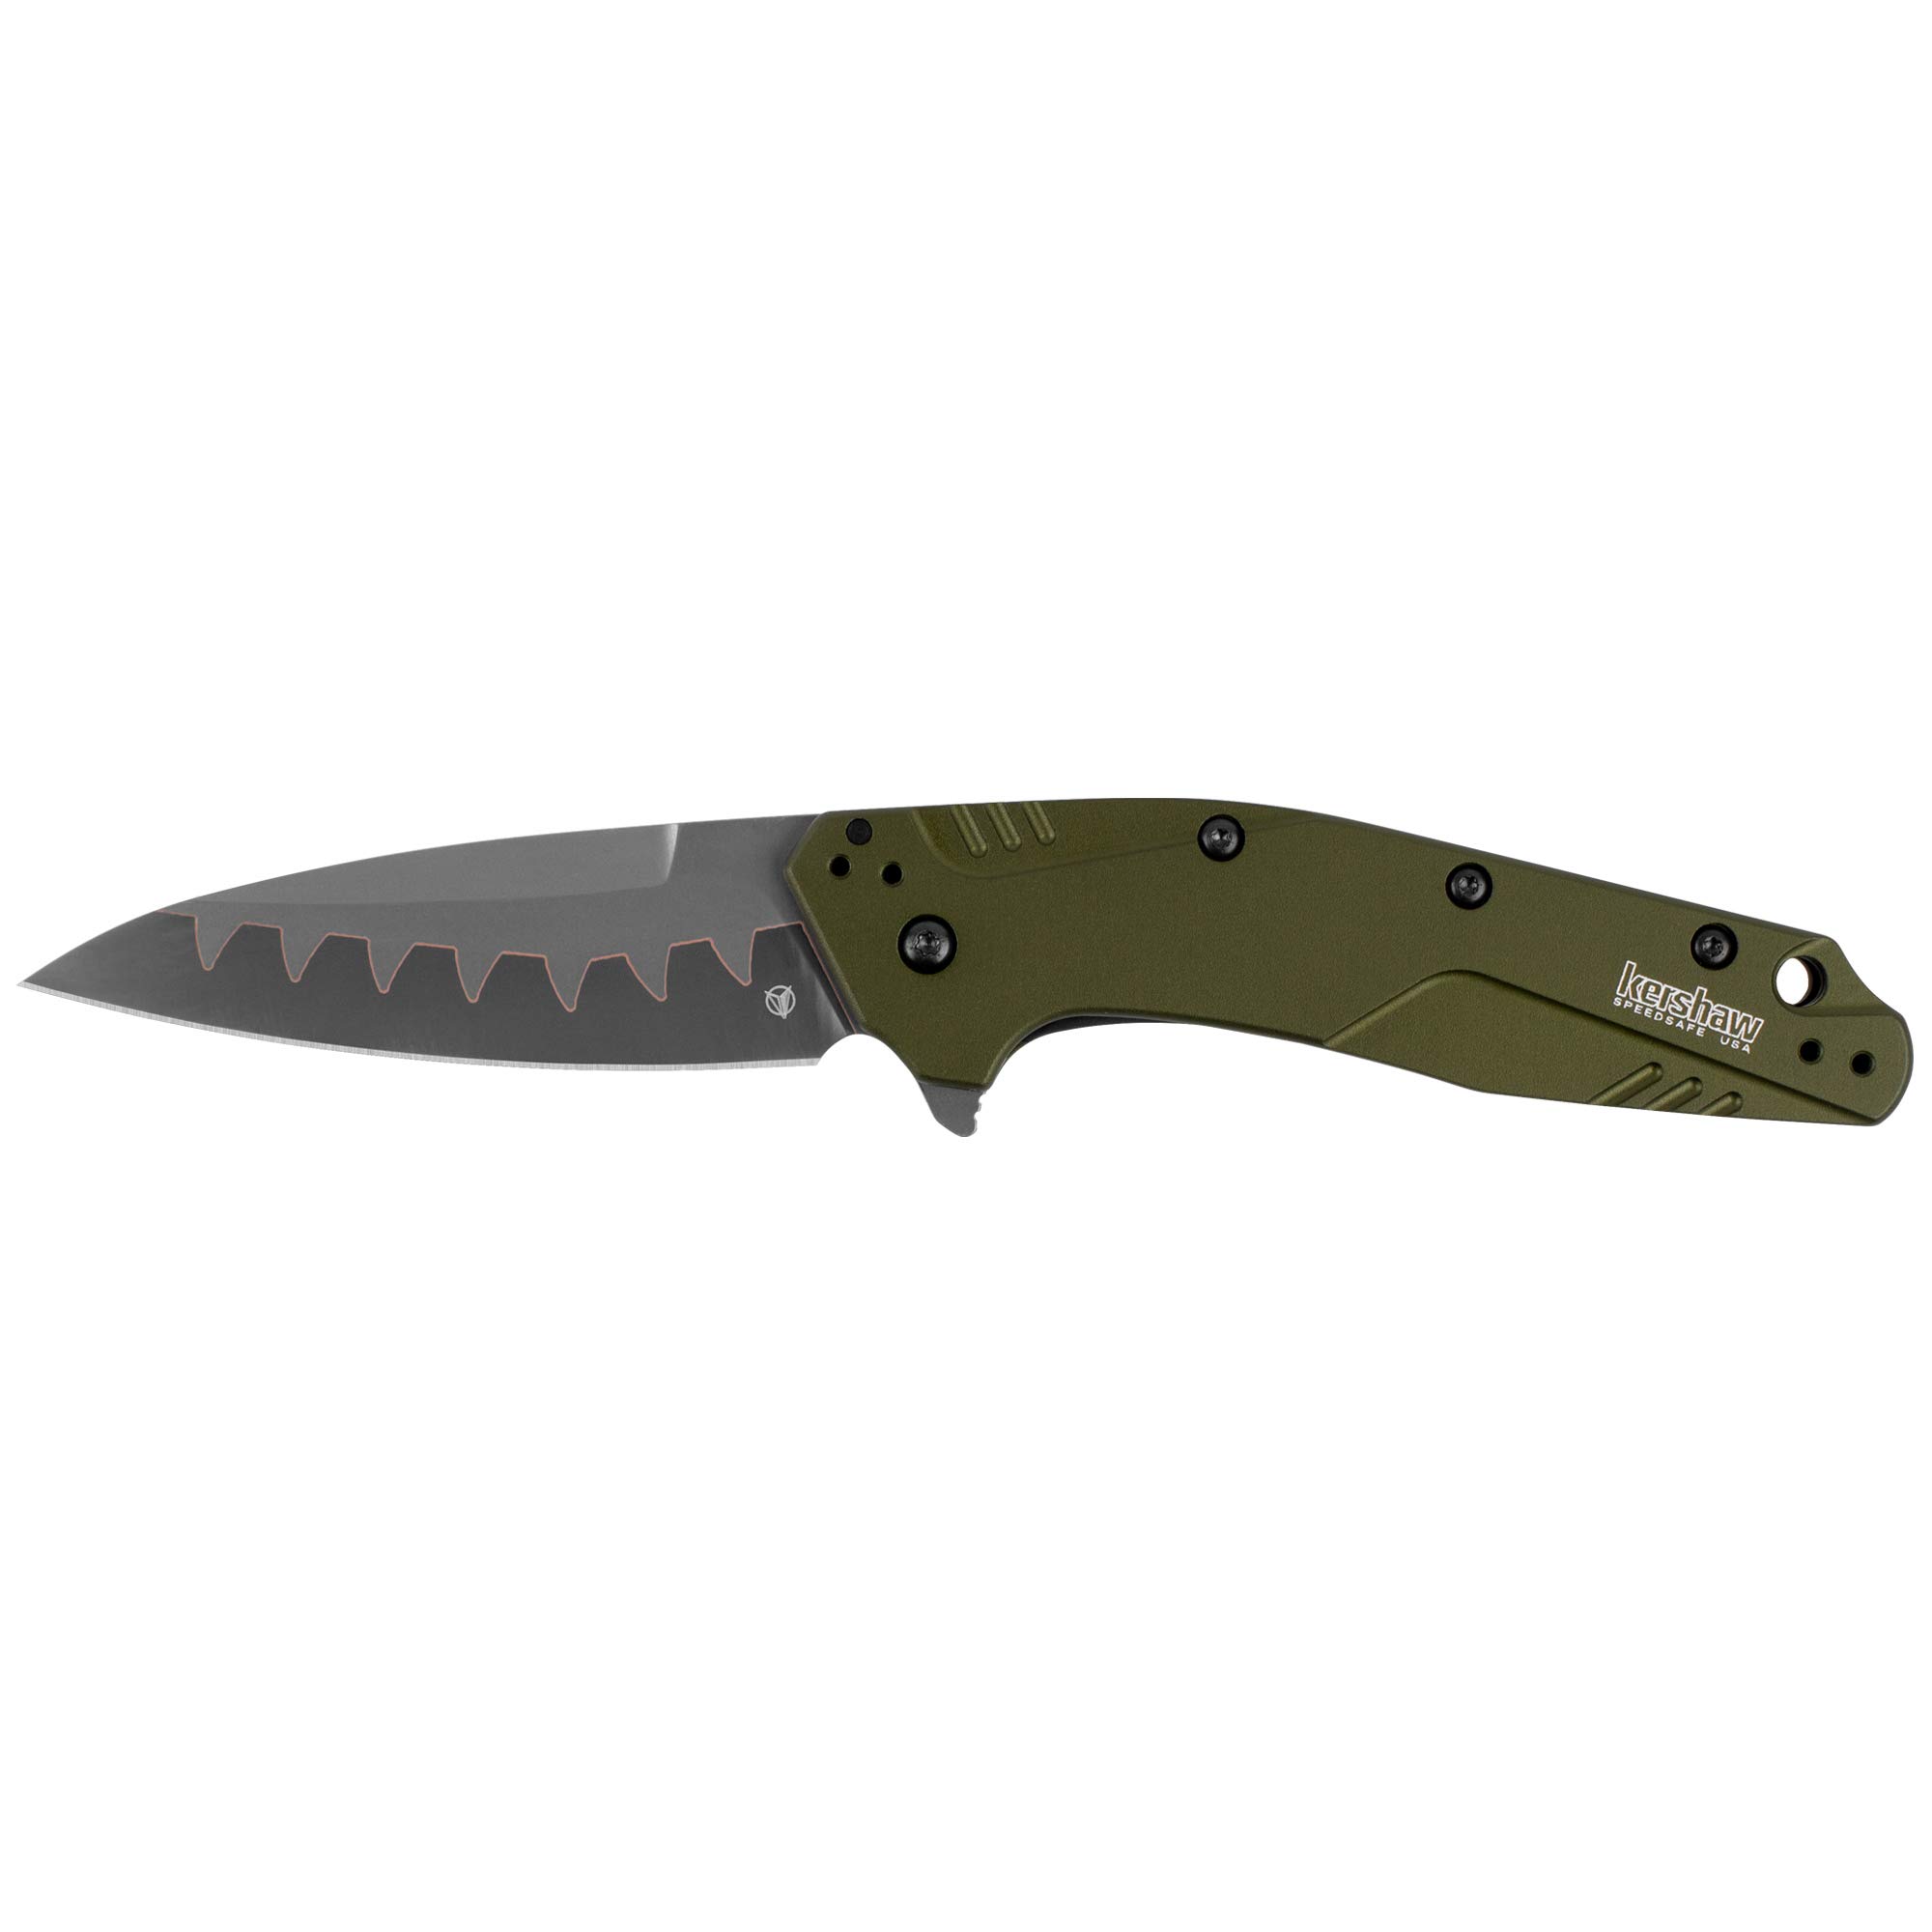 Kershaw Dividend Pocketknife, Olive, 3" CPM D2 and Bohler N690 Composite Drop PointBlade, Assisted Flipper Opening